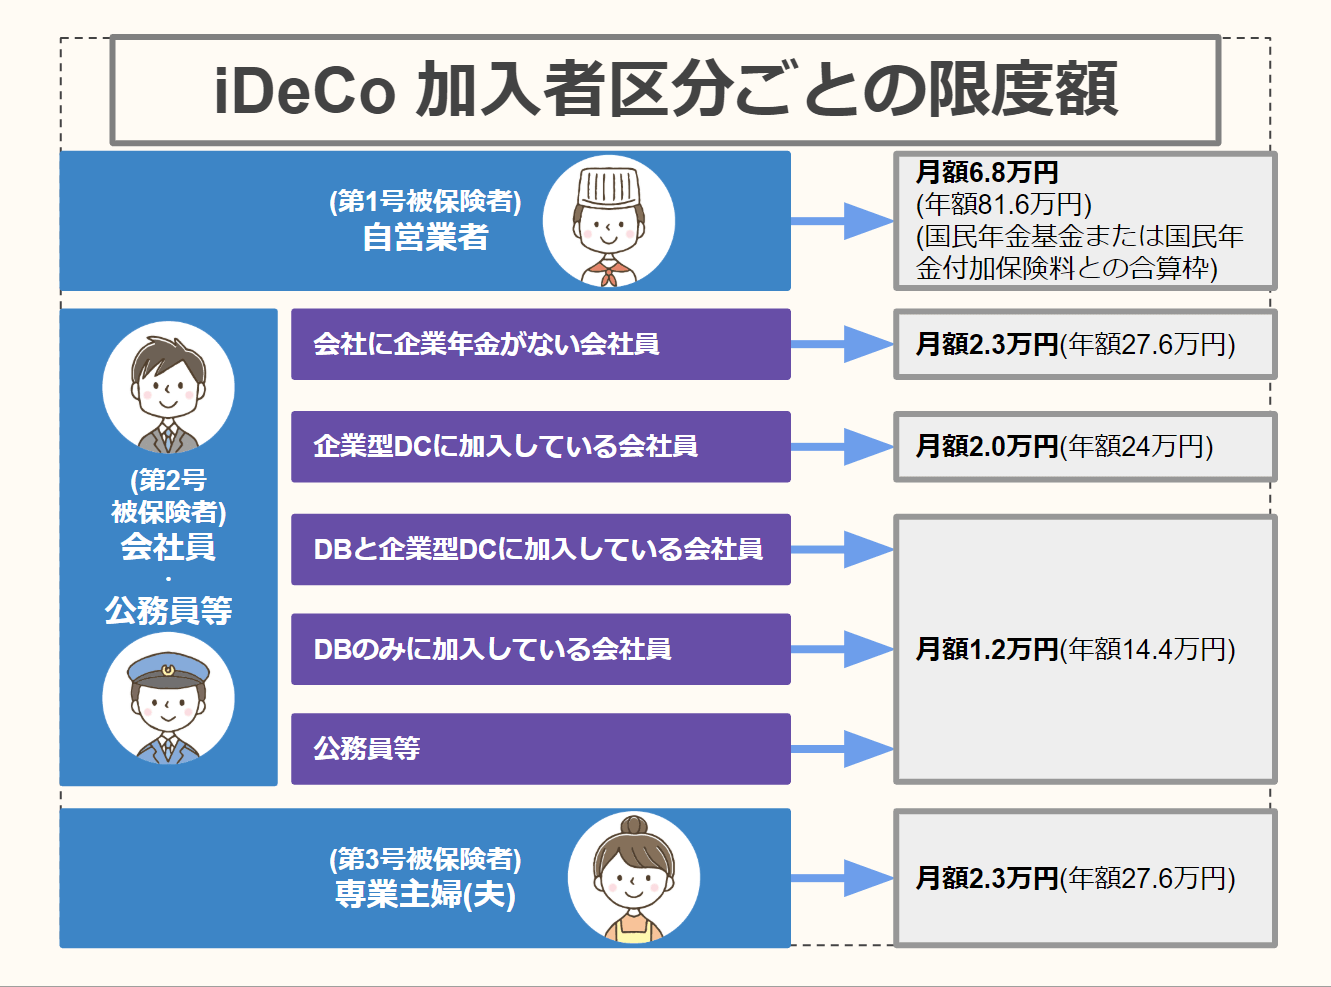 Idecoに会社員の方が加入した際のメリットや上限額 始め方を紹介